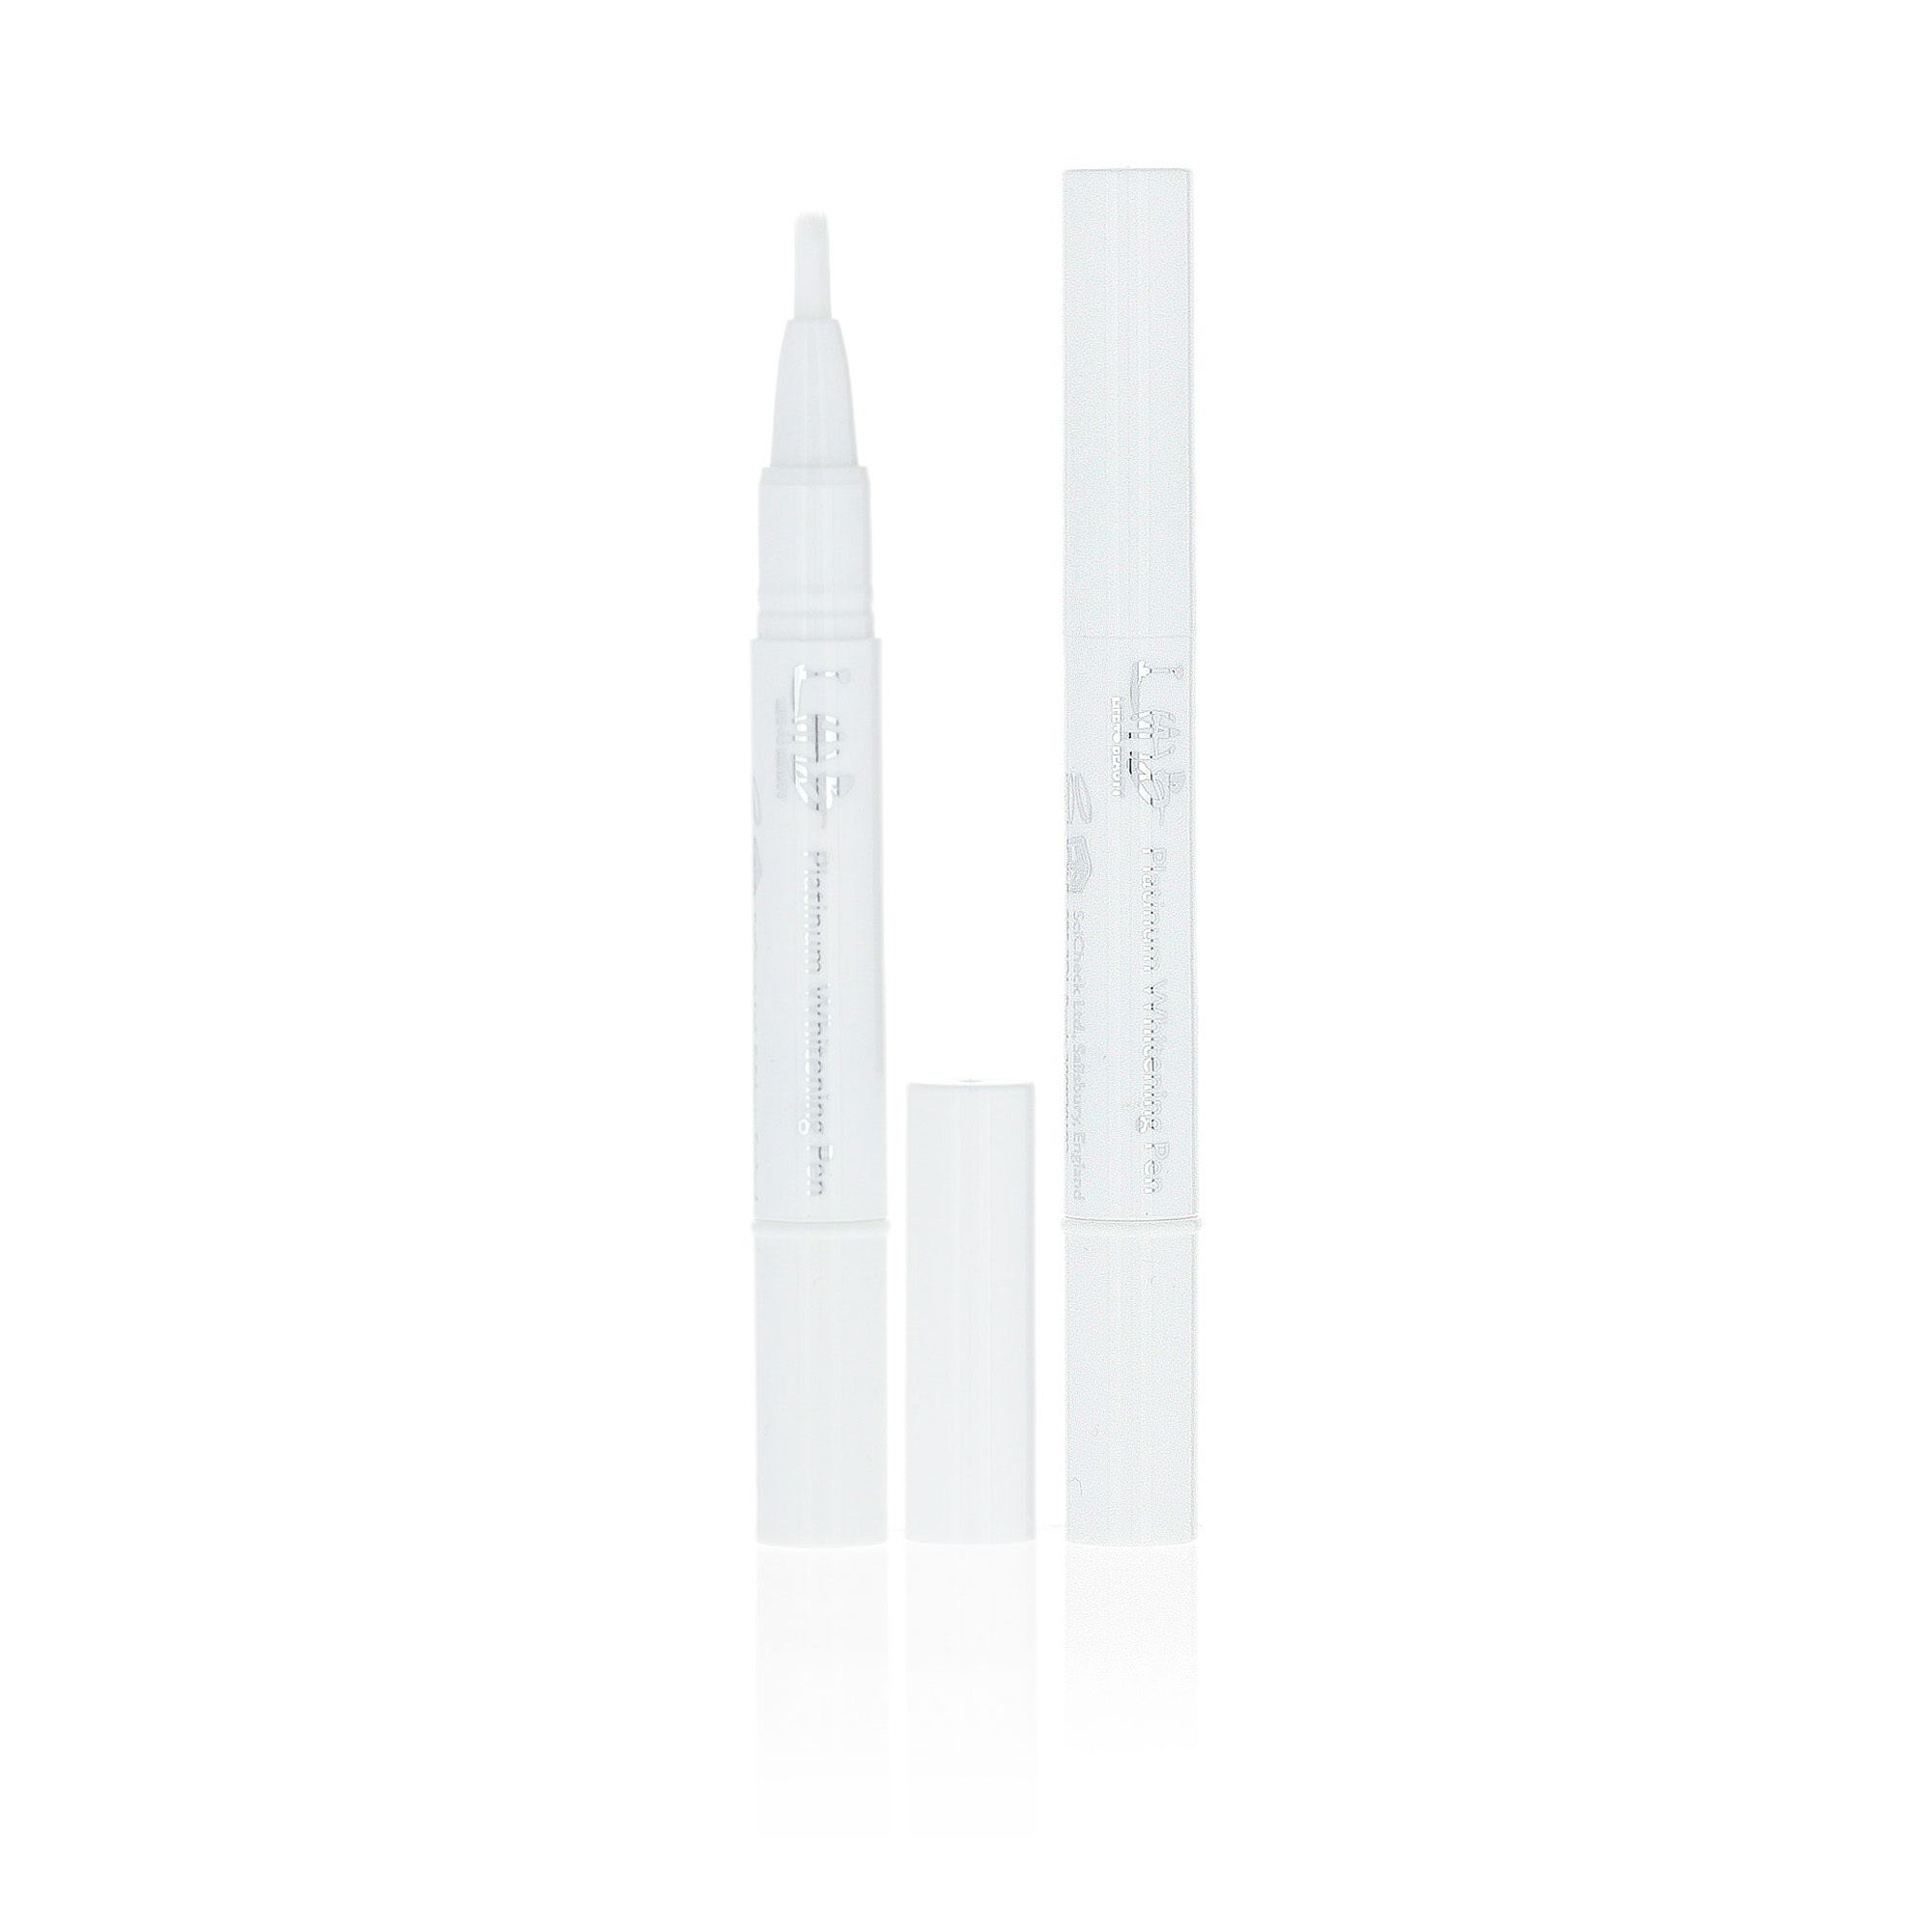 Whitening Pen Duo: penna sbiancante per denti, applicatore a pennello